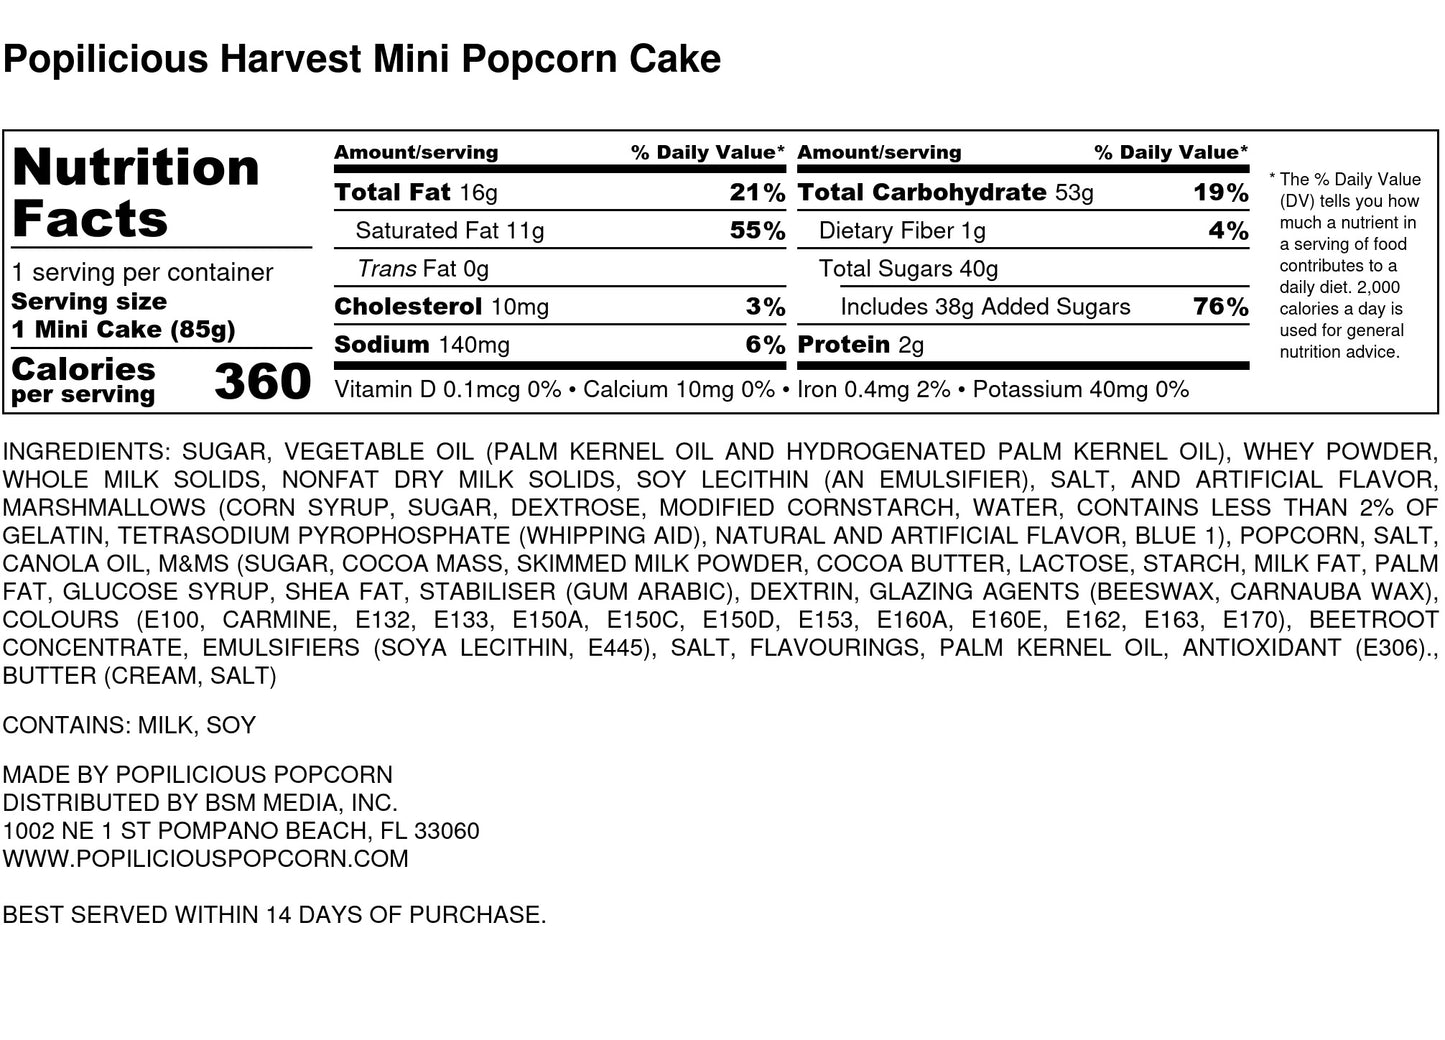 Happy Harvest Mini Popcorn Cakes